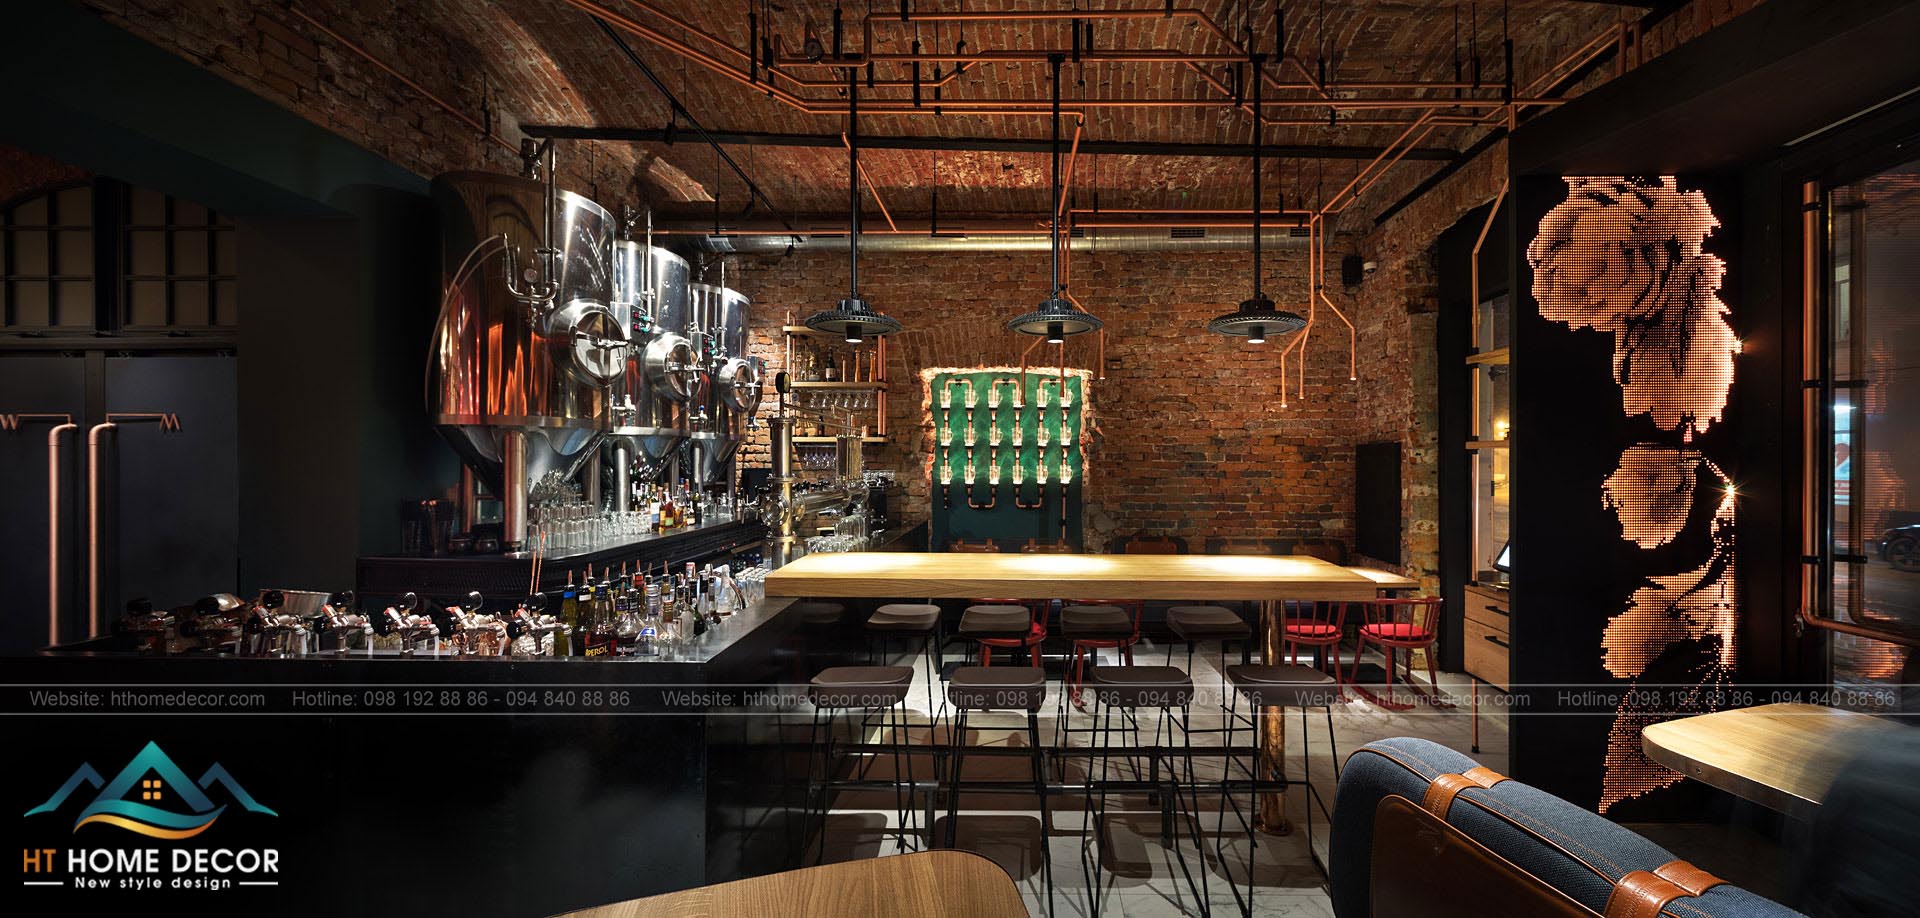 Cận cảnh không gian thiết kế nội thất nhà hàng bia vừa mang nét hiện đại vừa tạo nên cảm giác ấm cúng cho quý khách hàng.